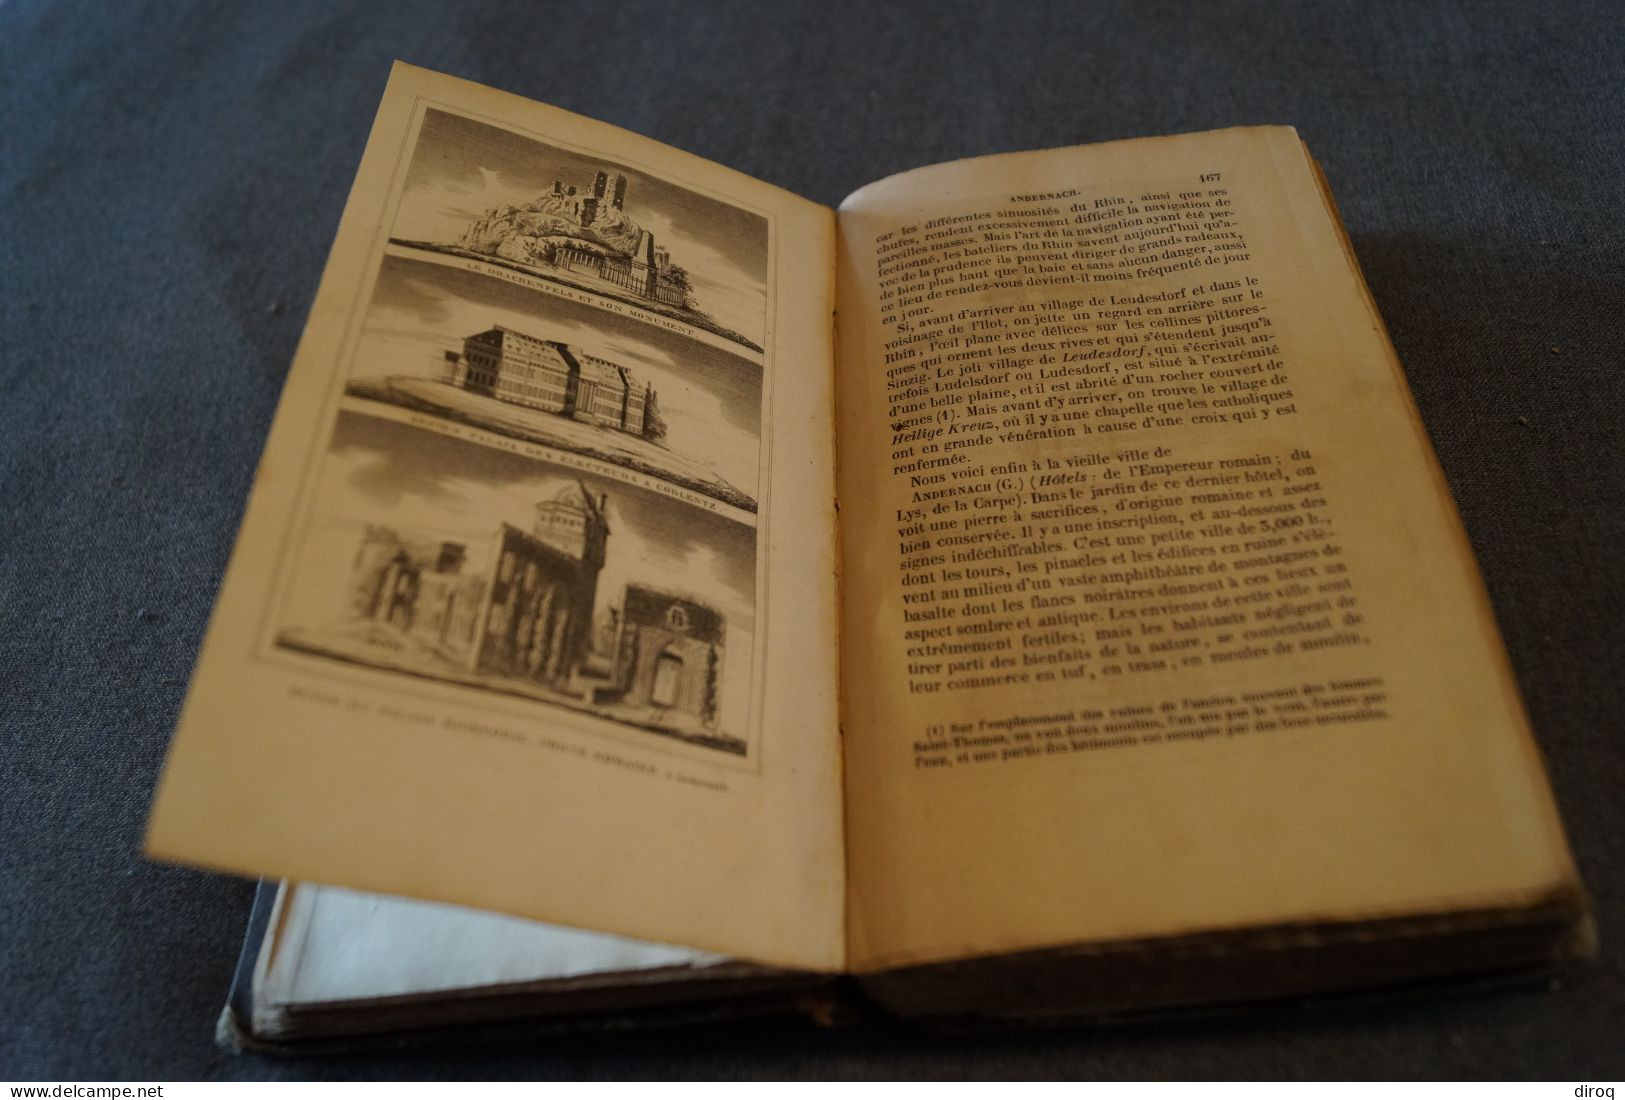 RARE,Guide Richard,1845,manuel du voyageur sur les bords du Rhin,700 pages + manuscrit,17,5 Cm./11 Cm.